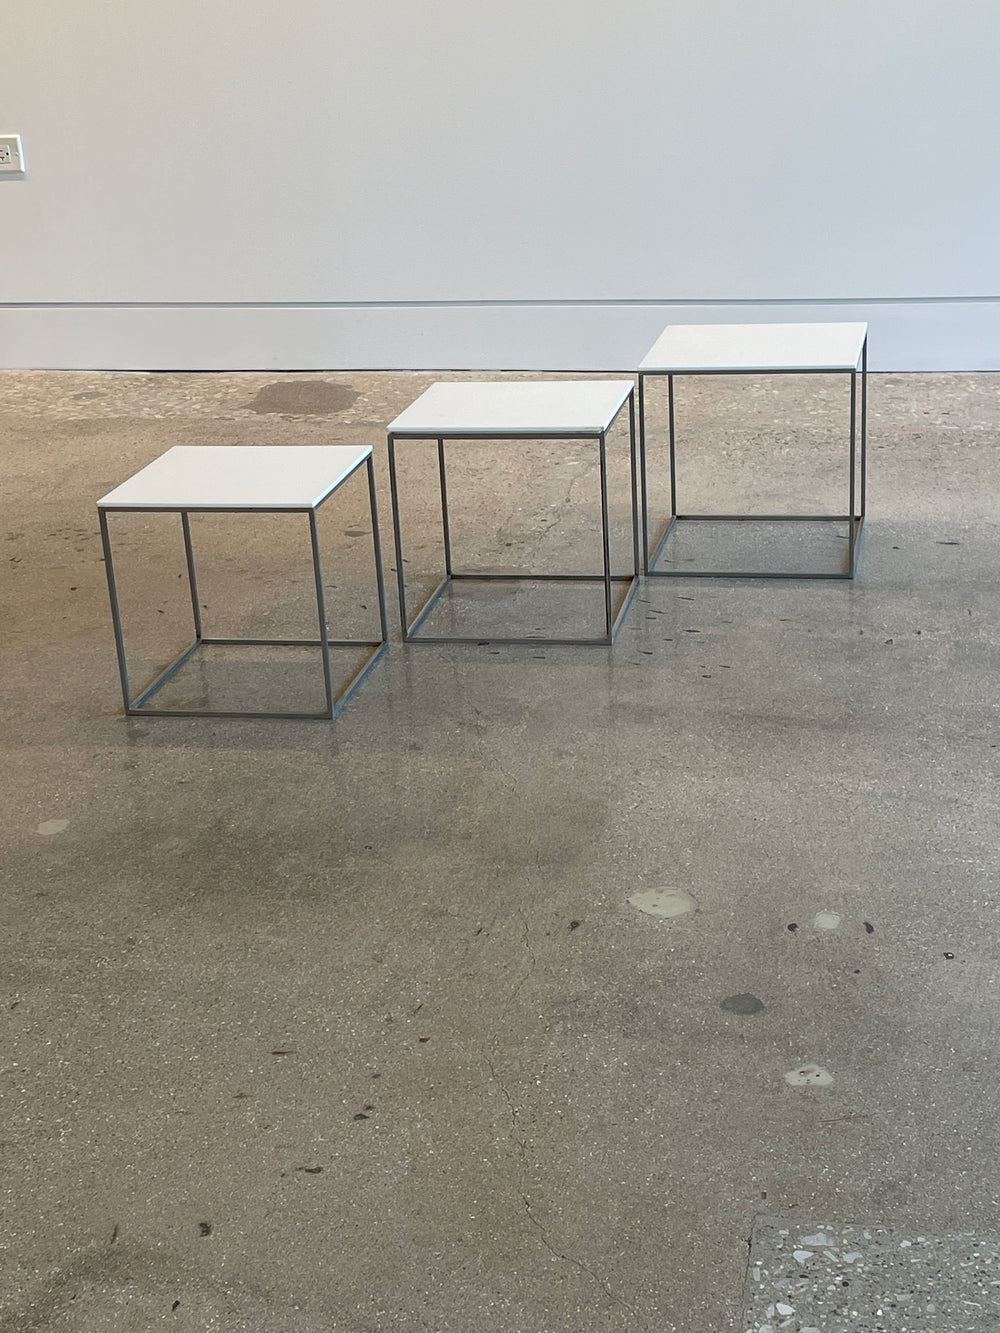 Poul Kjaerholm model "PK 71" nesting cube side tables produced by E. Kold Christensen